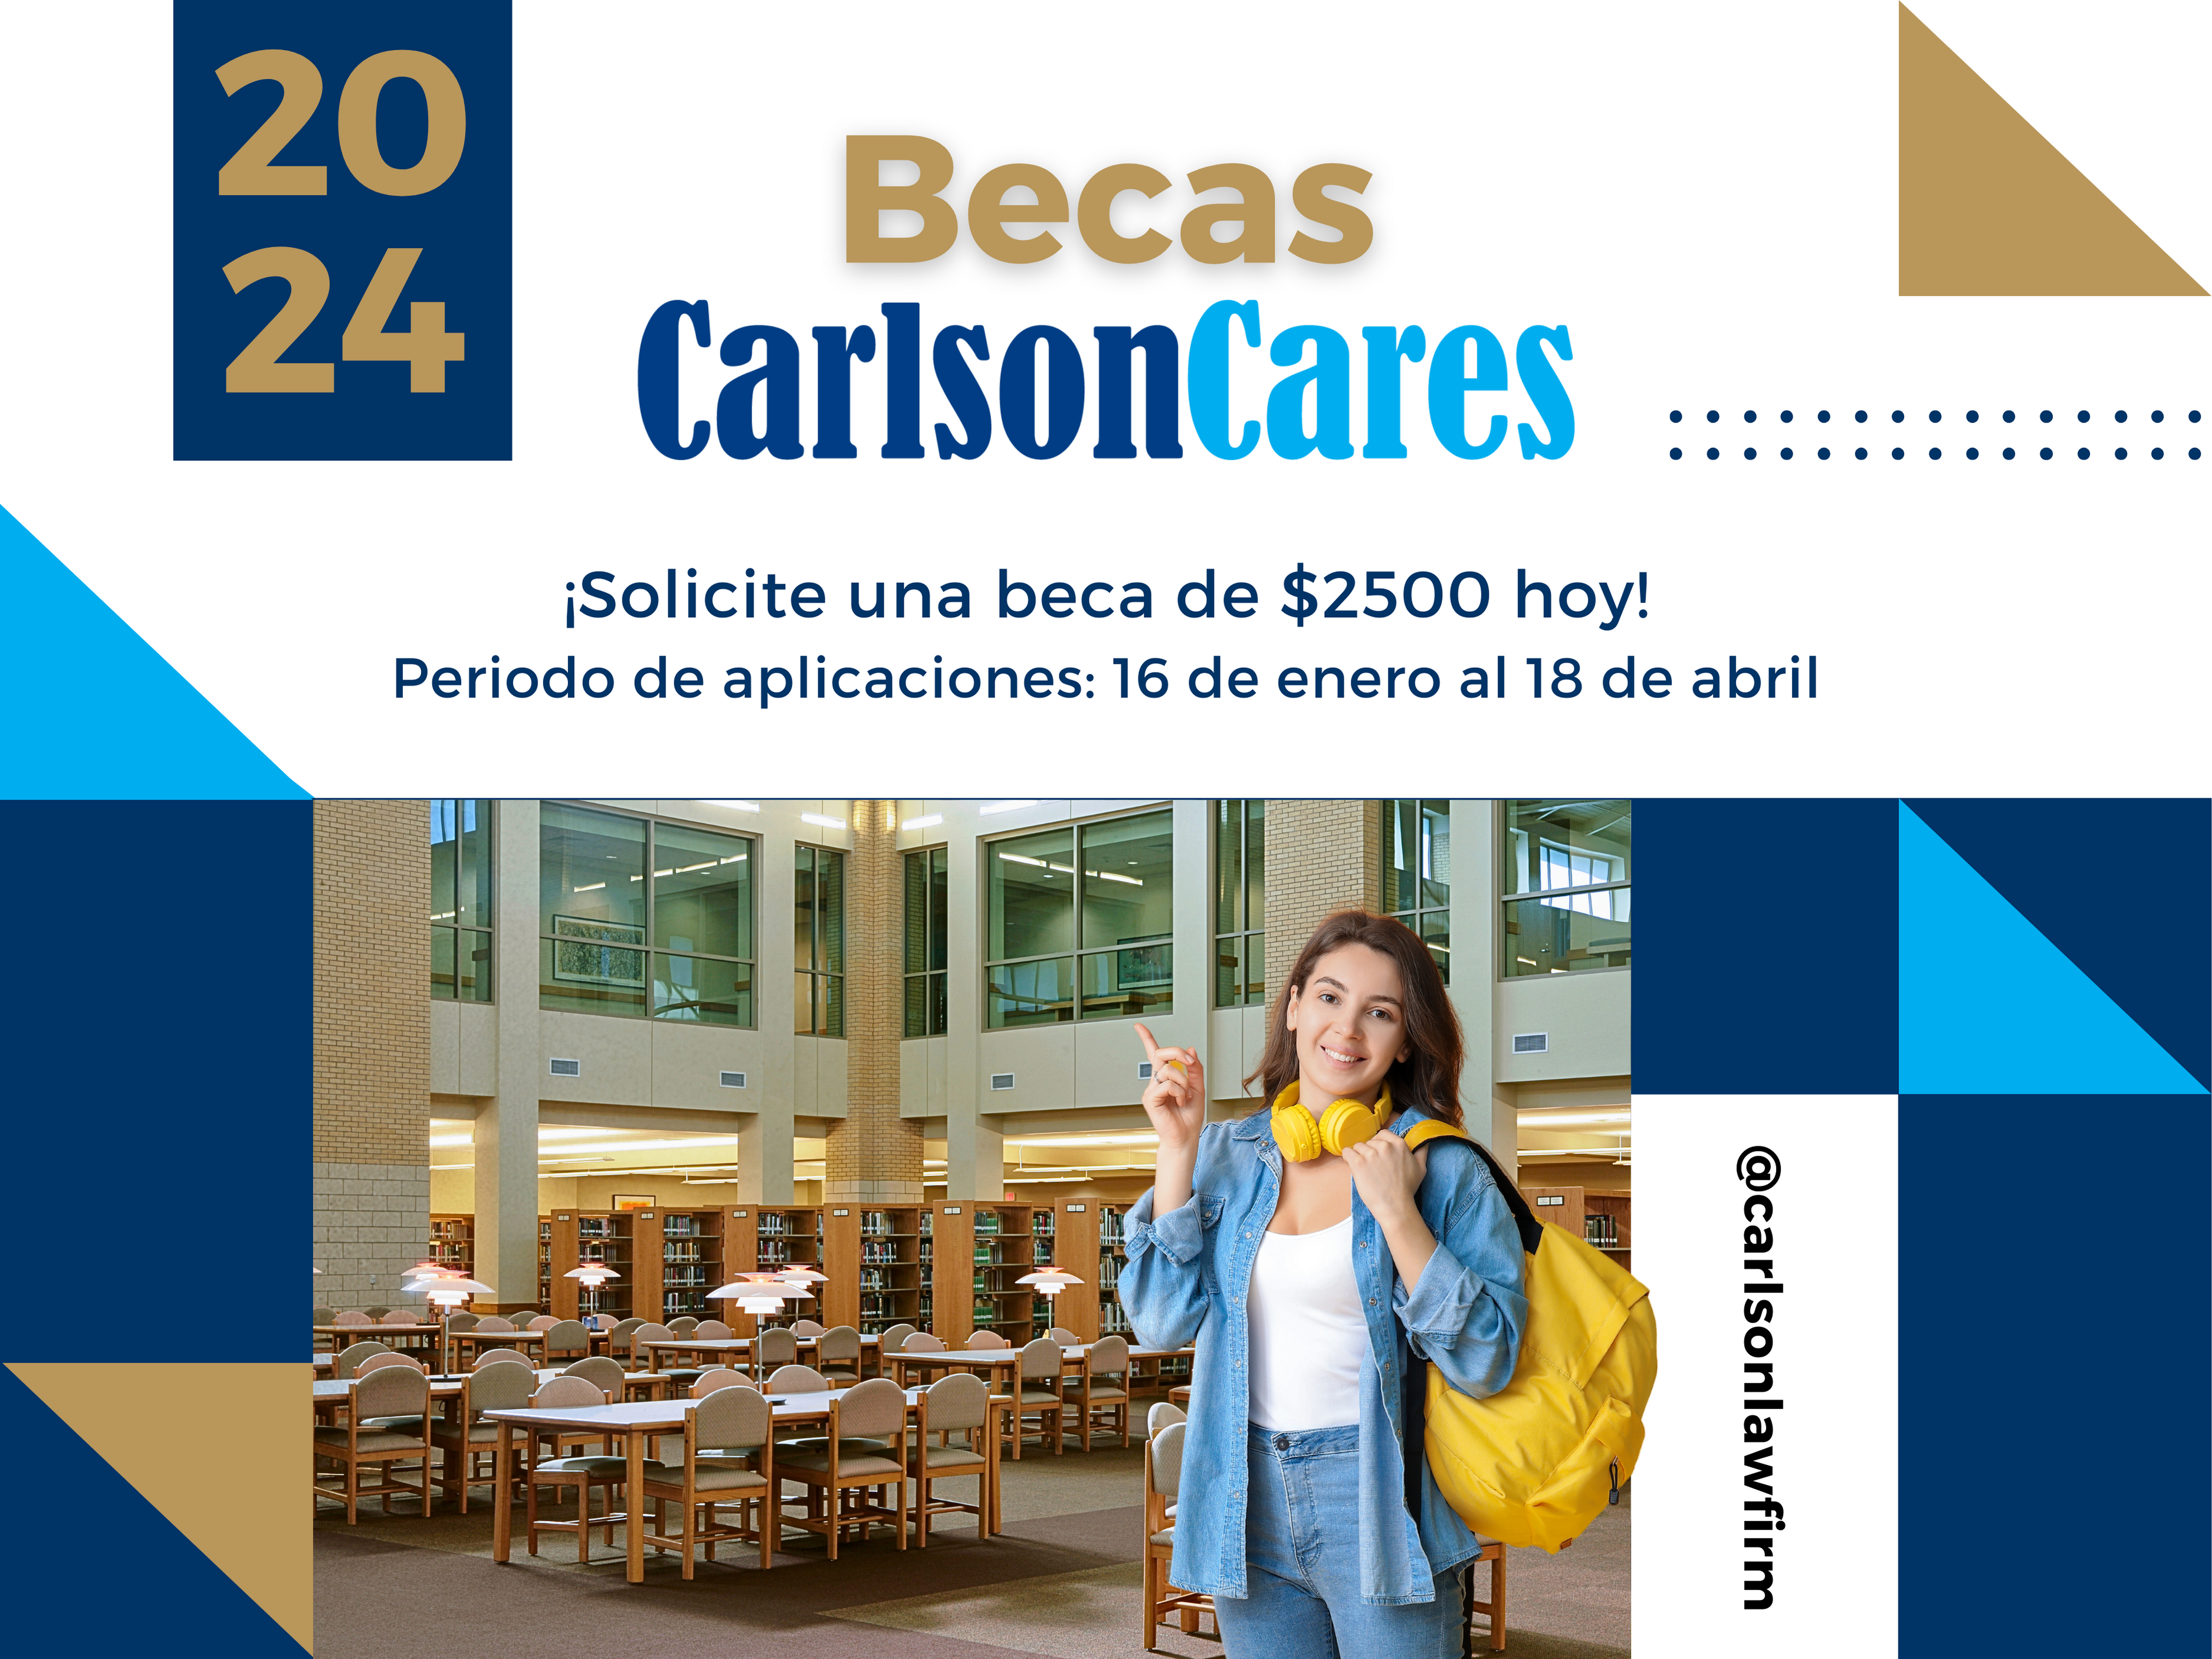 Becas para estudiantes de Texas; pueden obtener $2500 con la Beca Carlson Cares.